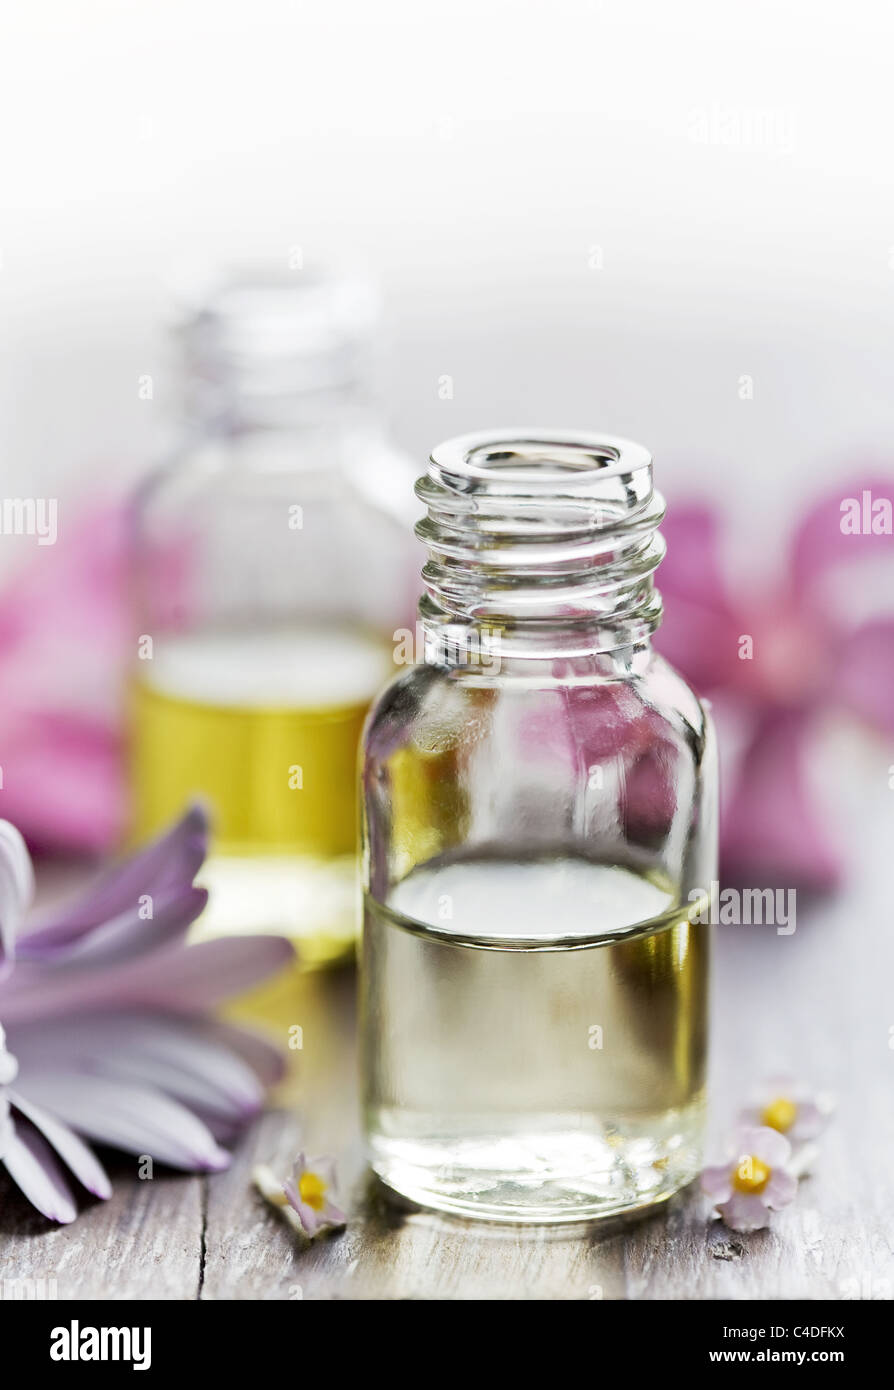 essential oils Stock Photo